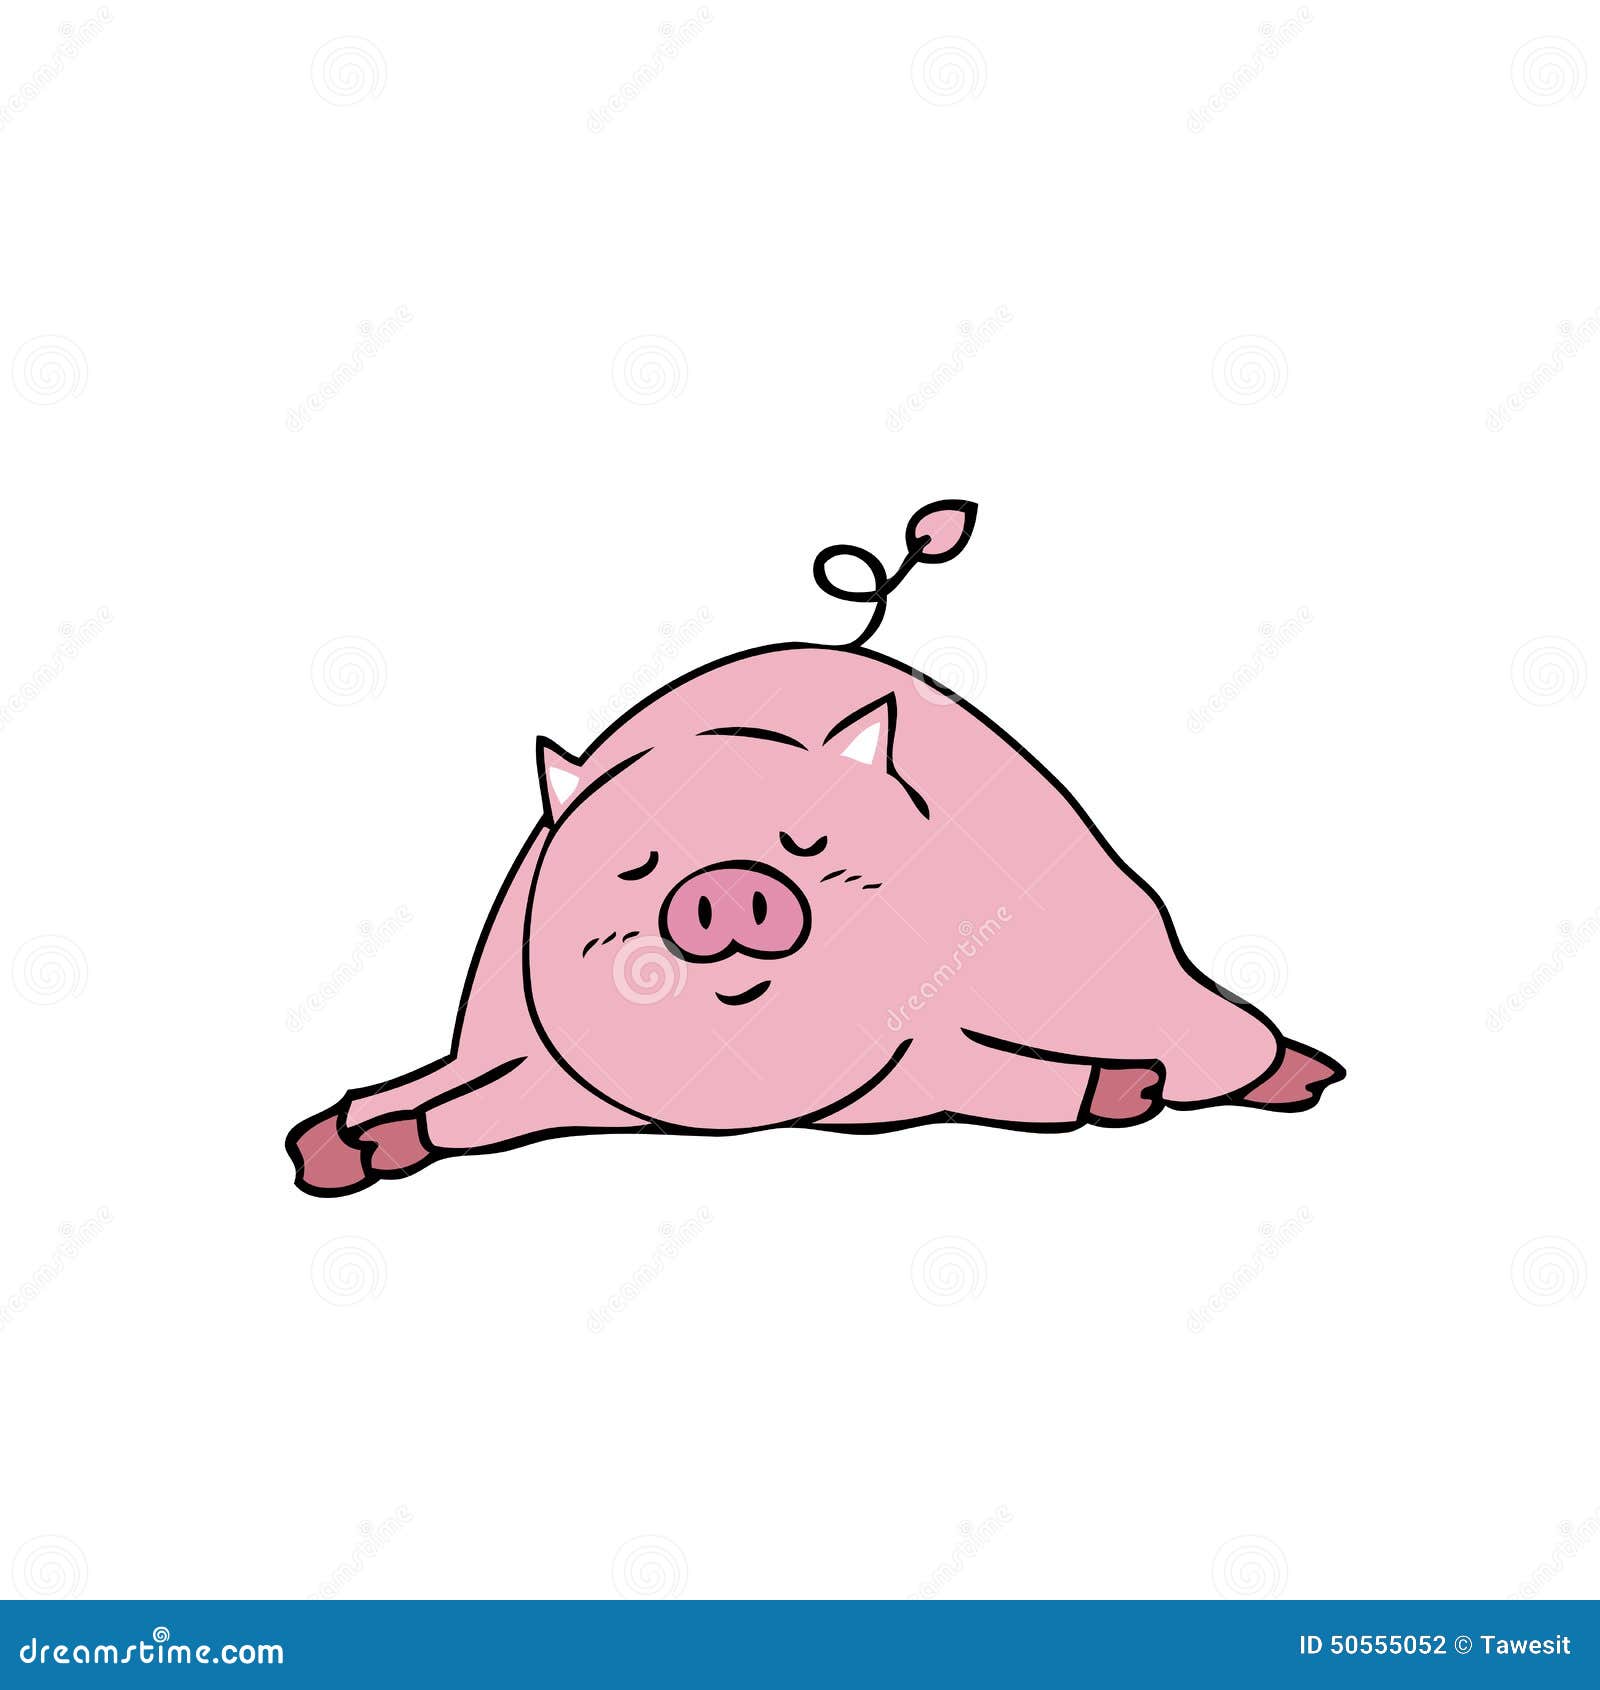 在泡泡里睡懒觉的猪小屁手机壁纸 - 25H.NET壁纸库